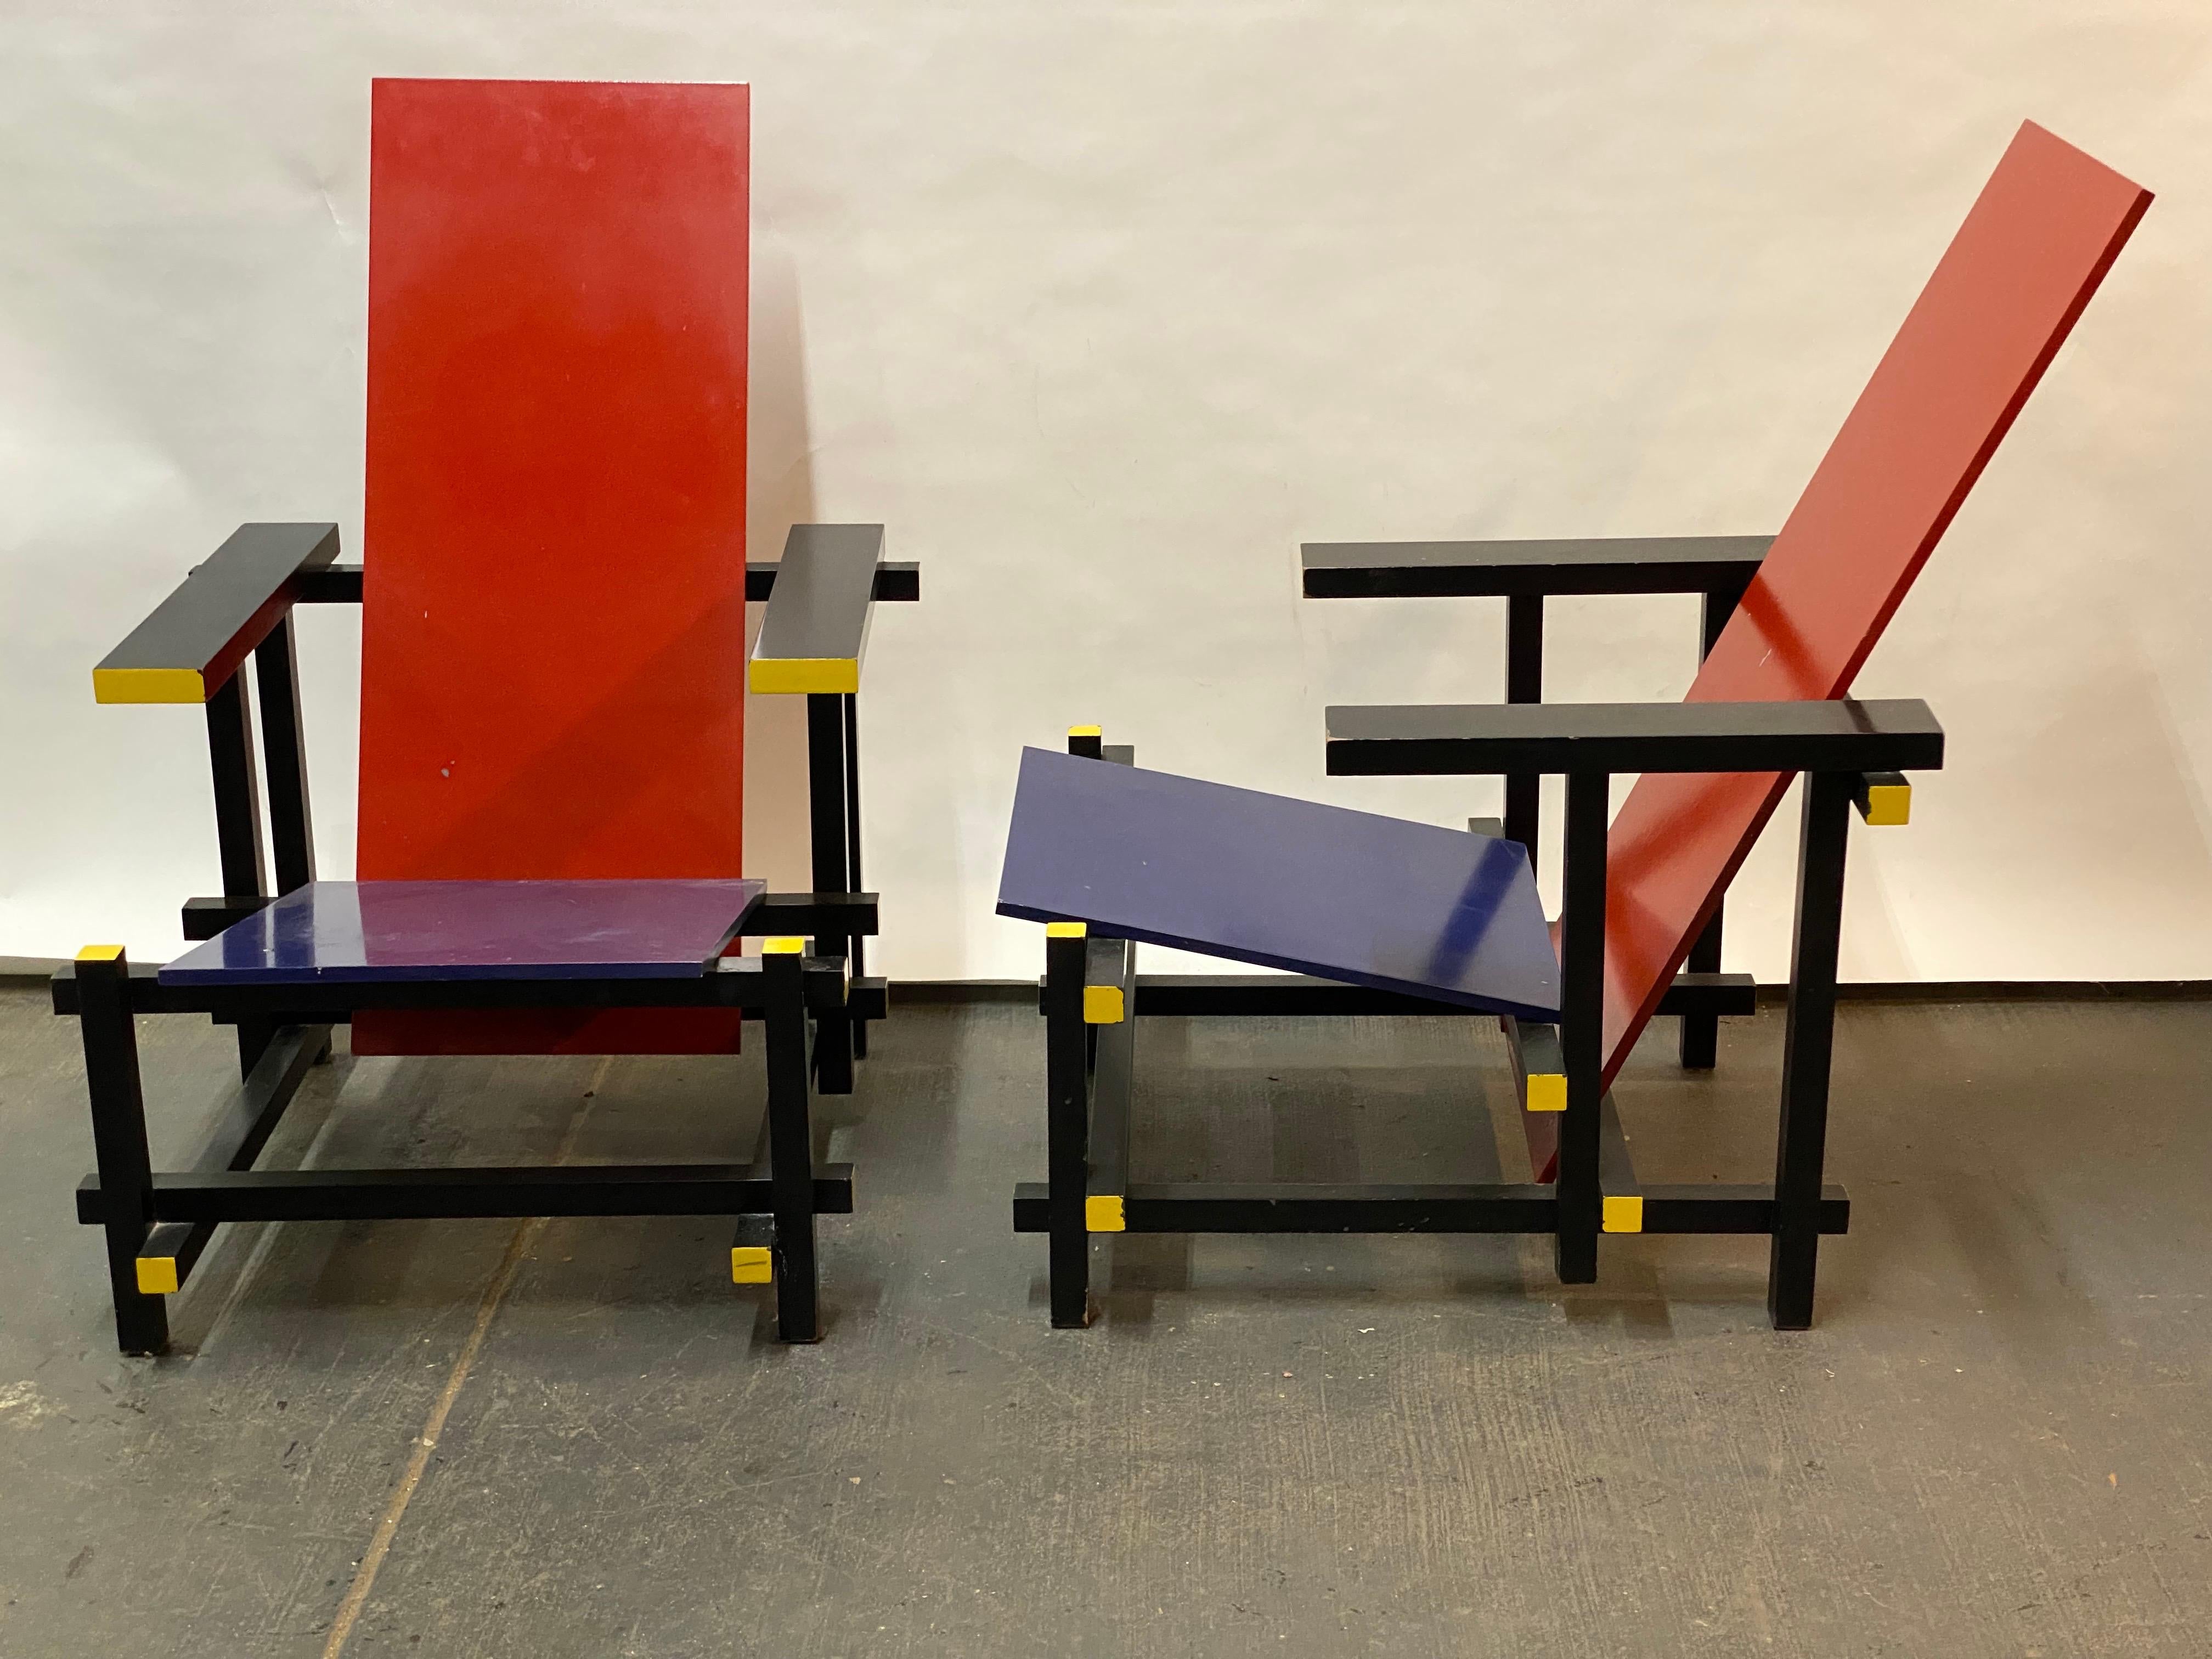 Une paire de chaises longues Gerrit Rietveld rouge et bleu de style DeStijl. Il est étonnamment confortable malgré sa forme anguleuse. L'original a été produit vers 1918. Ils ont été produits dans les années 1980, à une époque où le design moderne